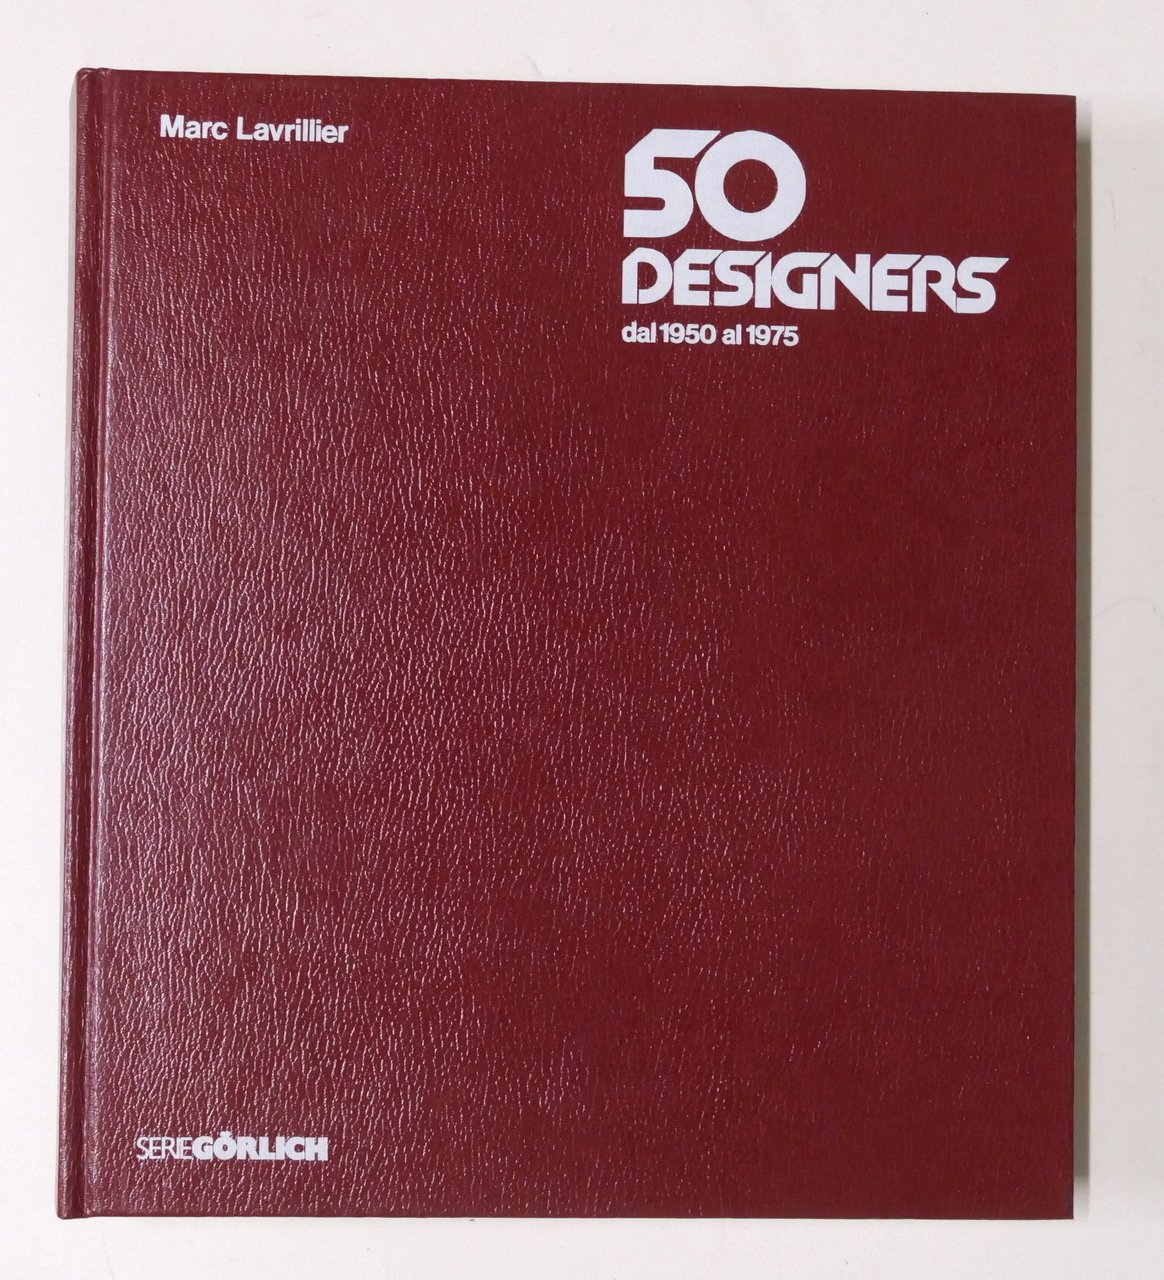 Marc Lavrillier - 50 designer dal 1950 al 1975 - …